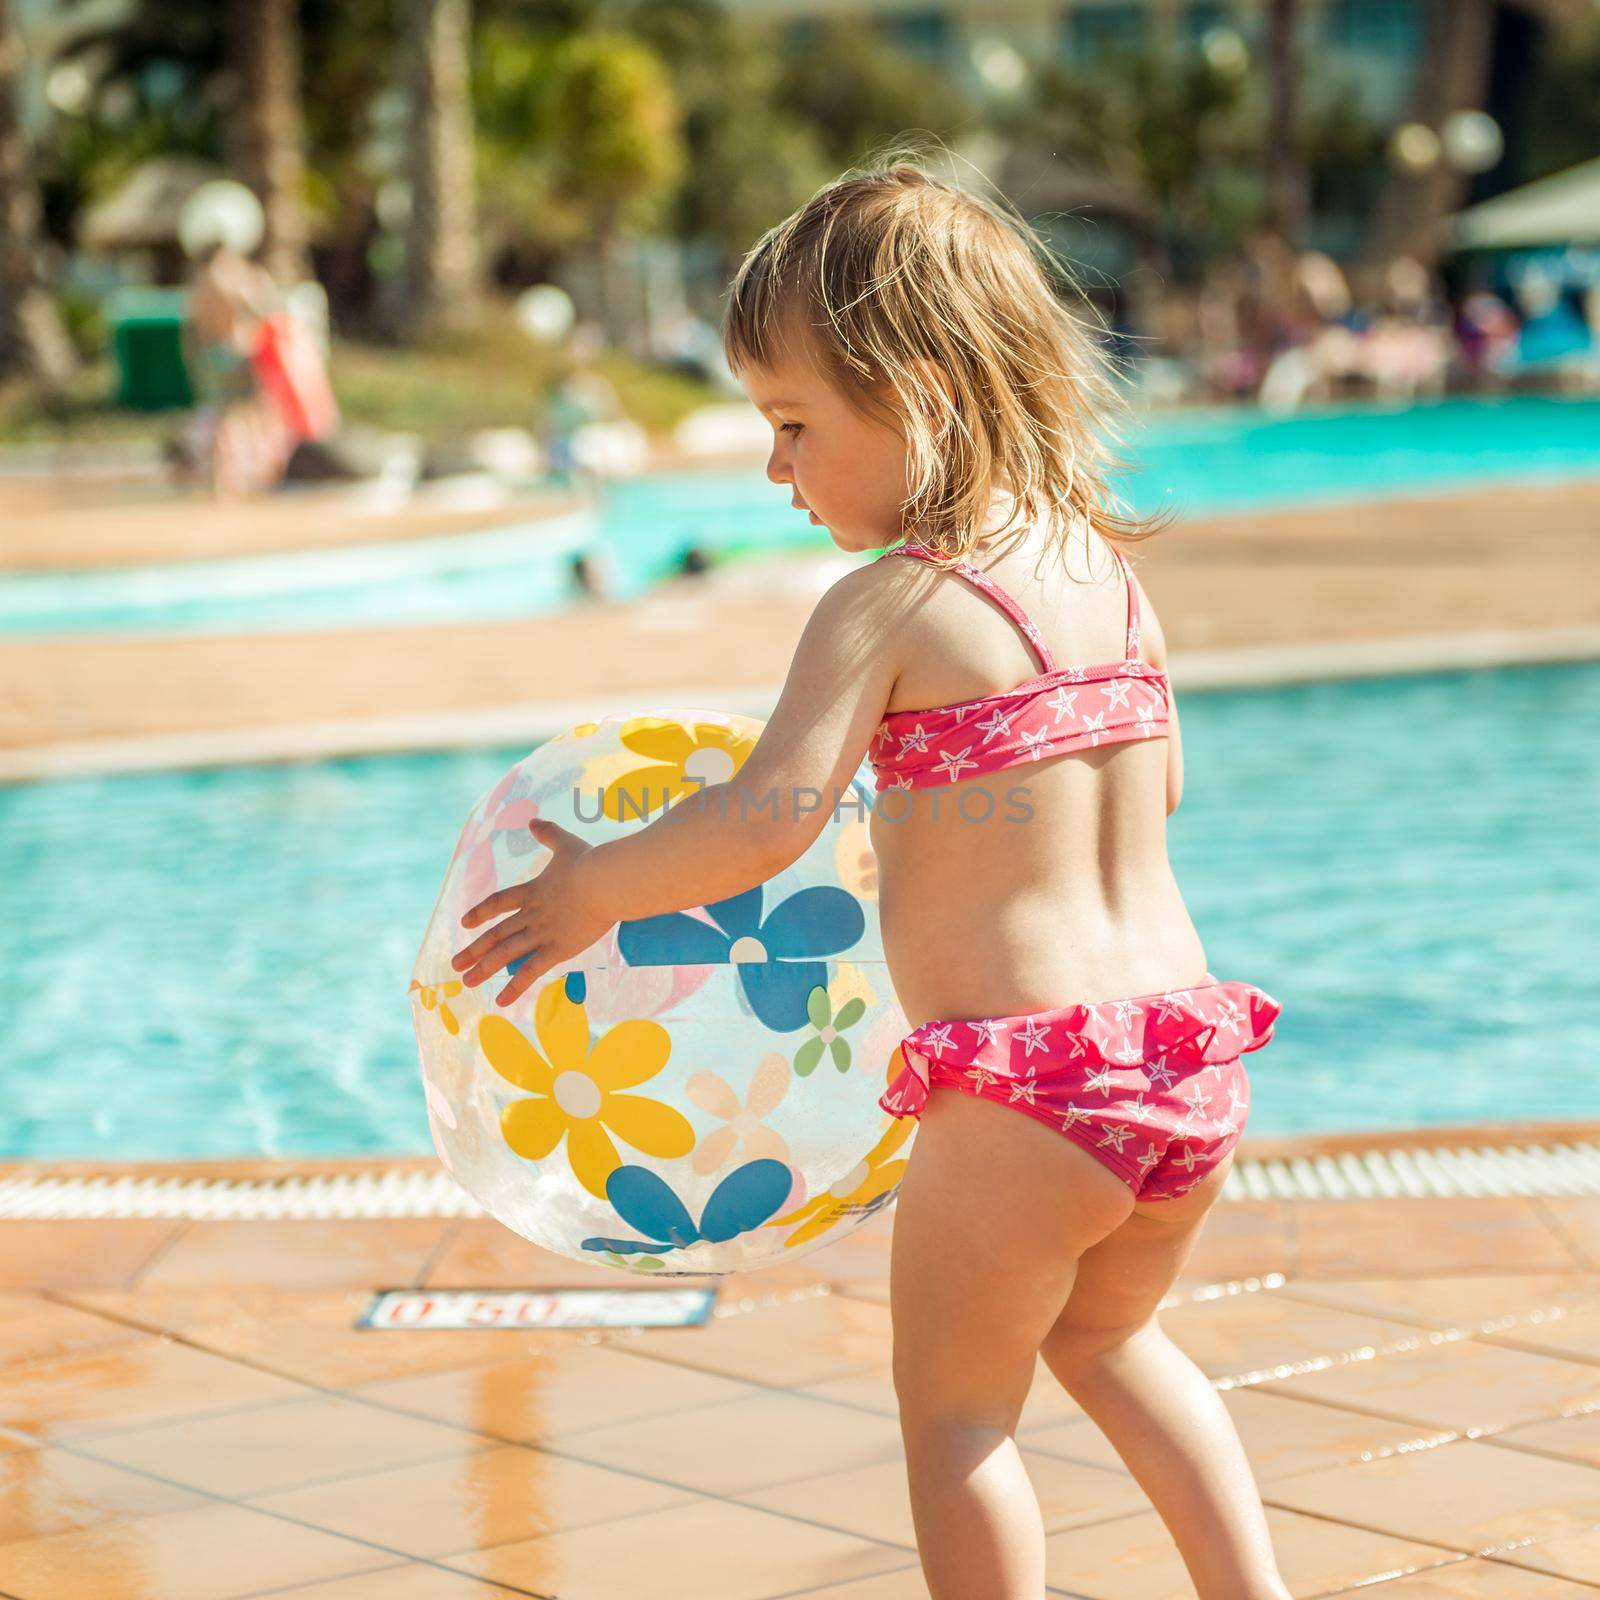 little girl near the pool by tan4ikk1